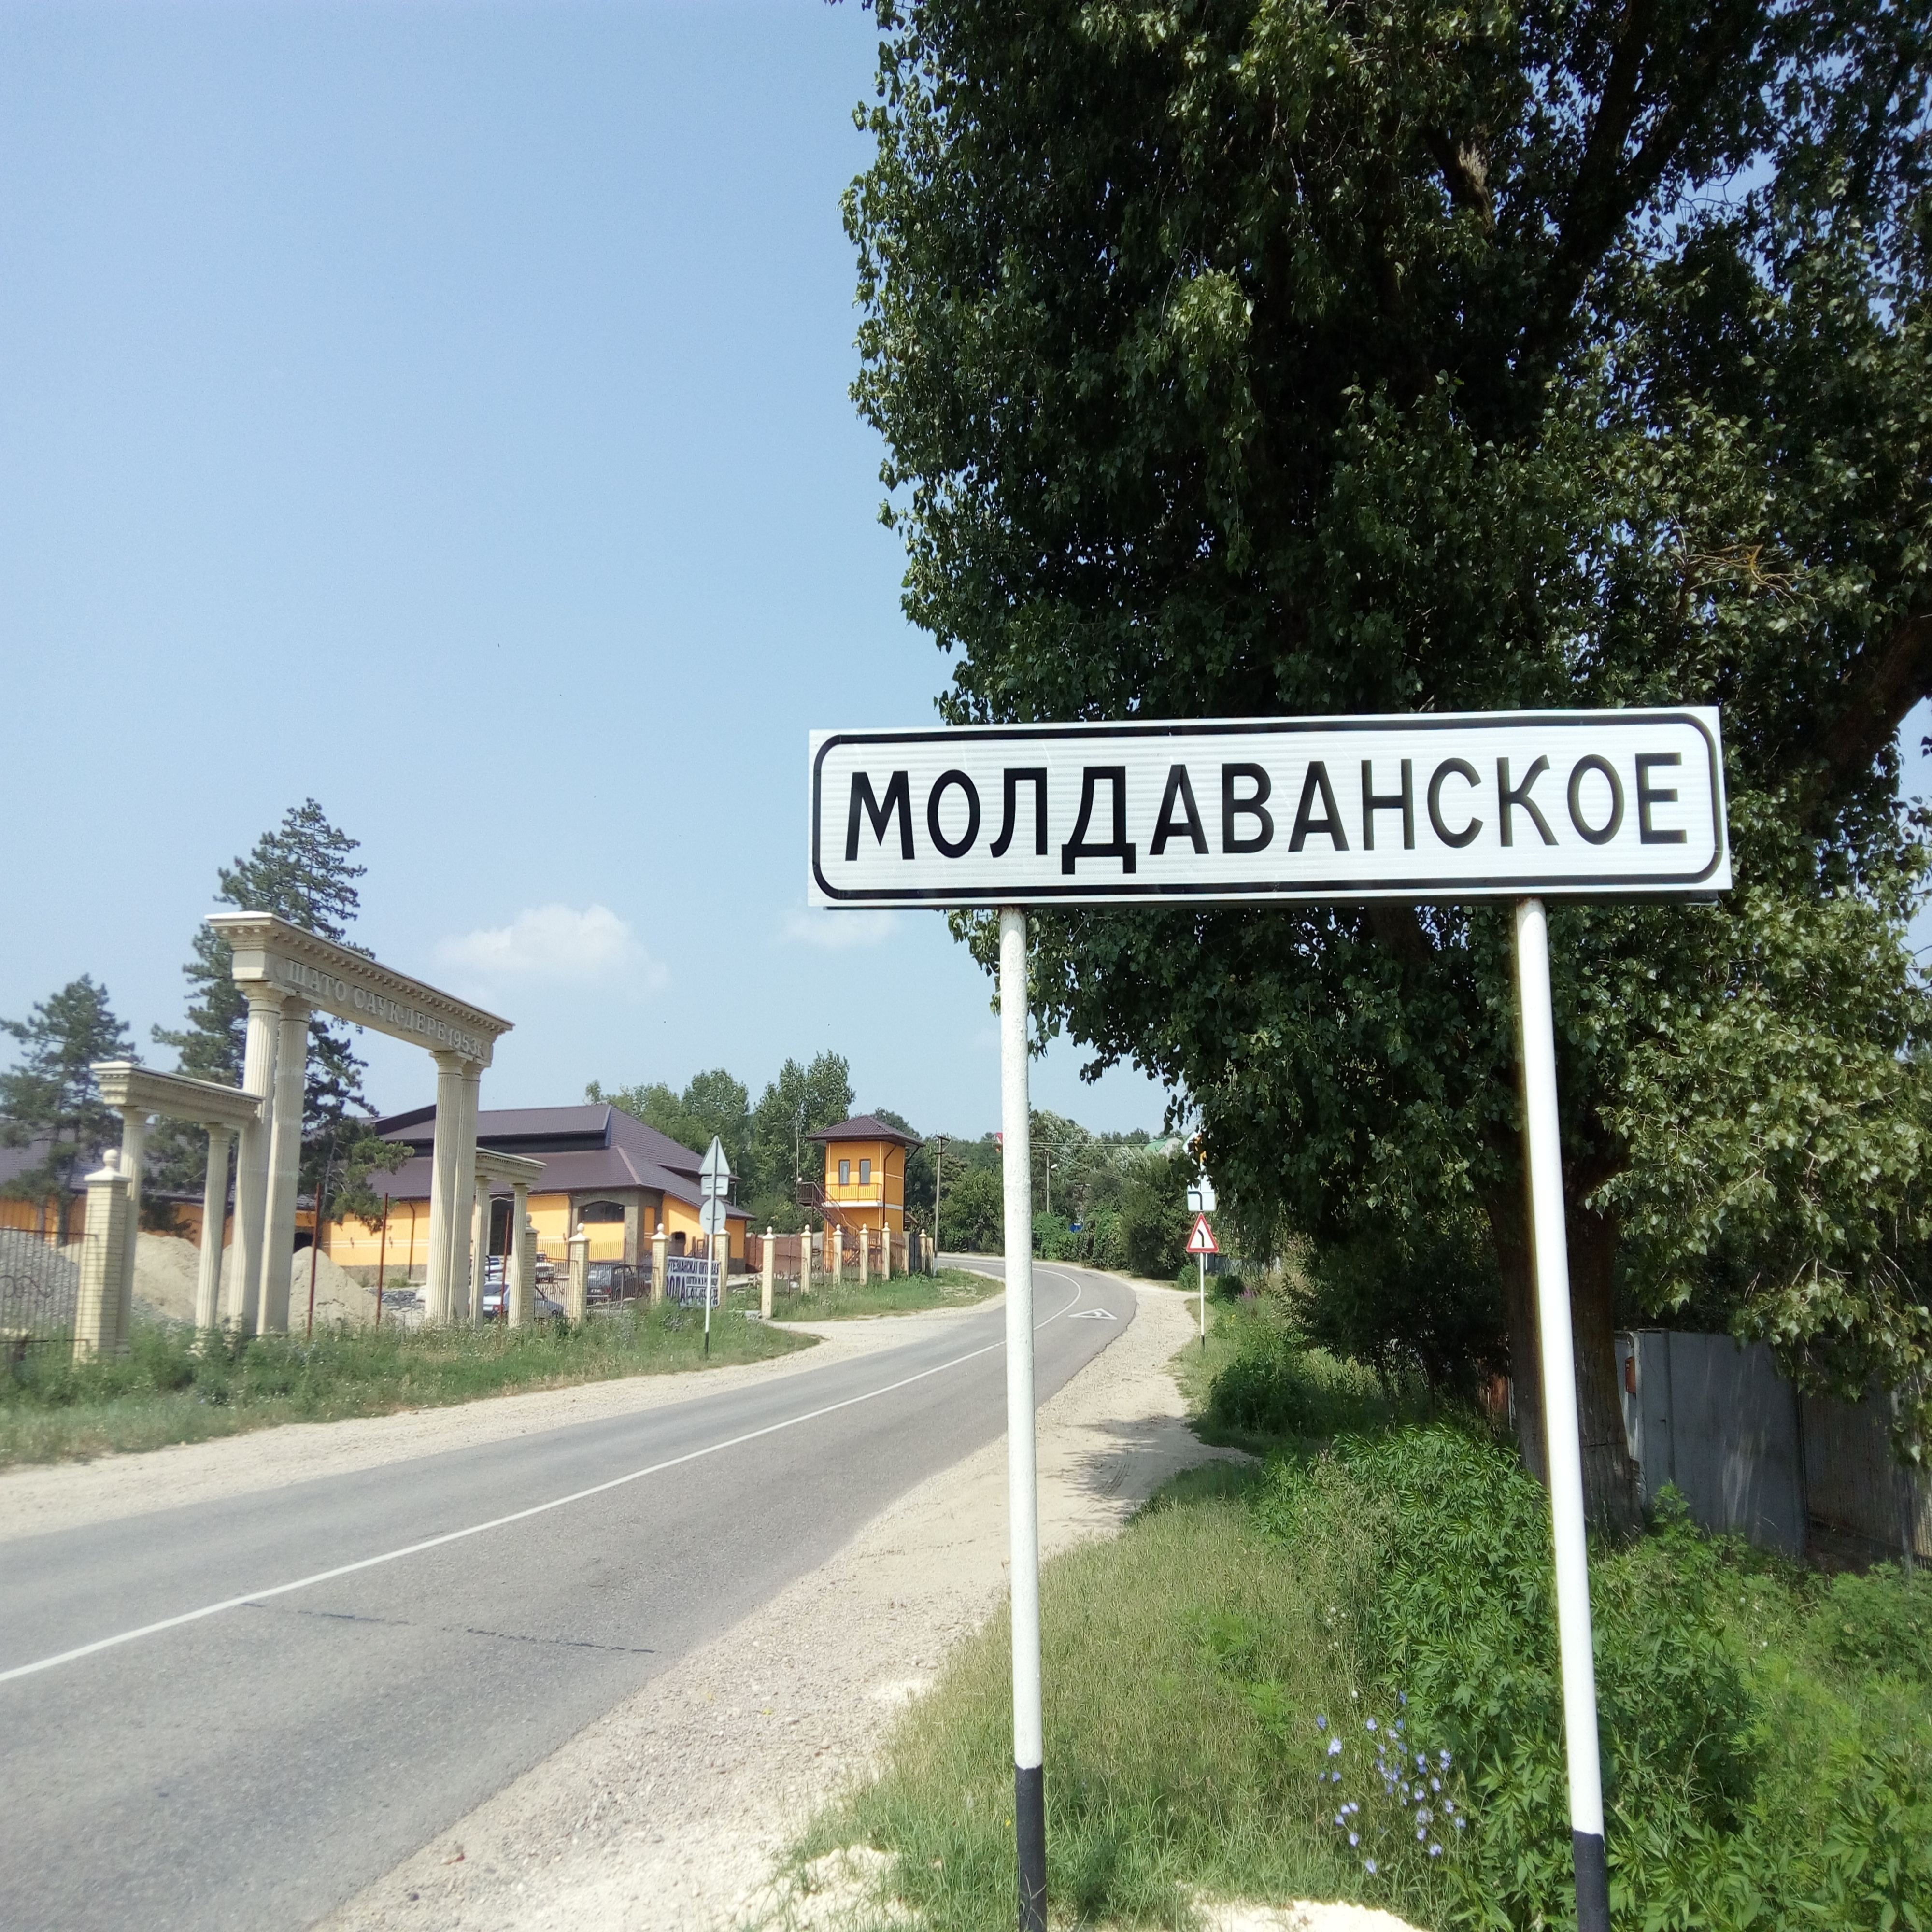 Moldavanskoye Village (Russian Version)